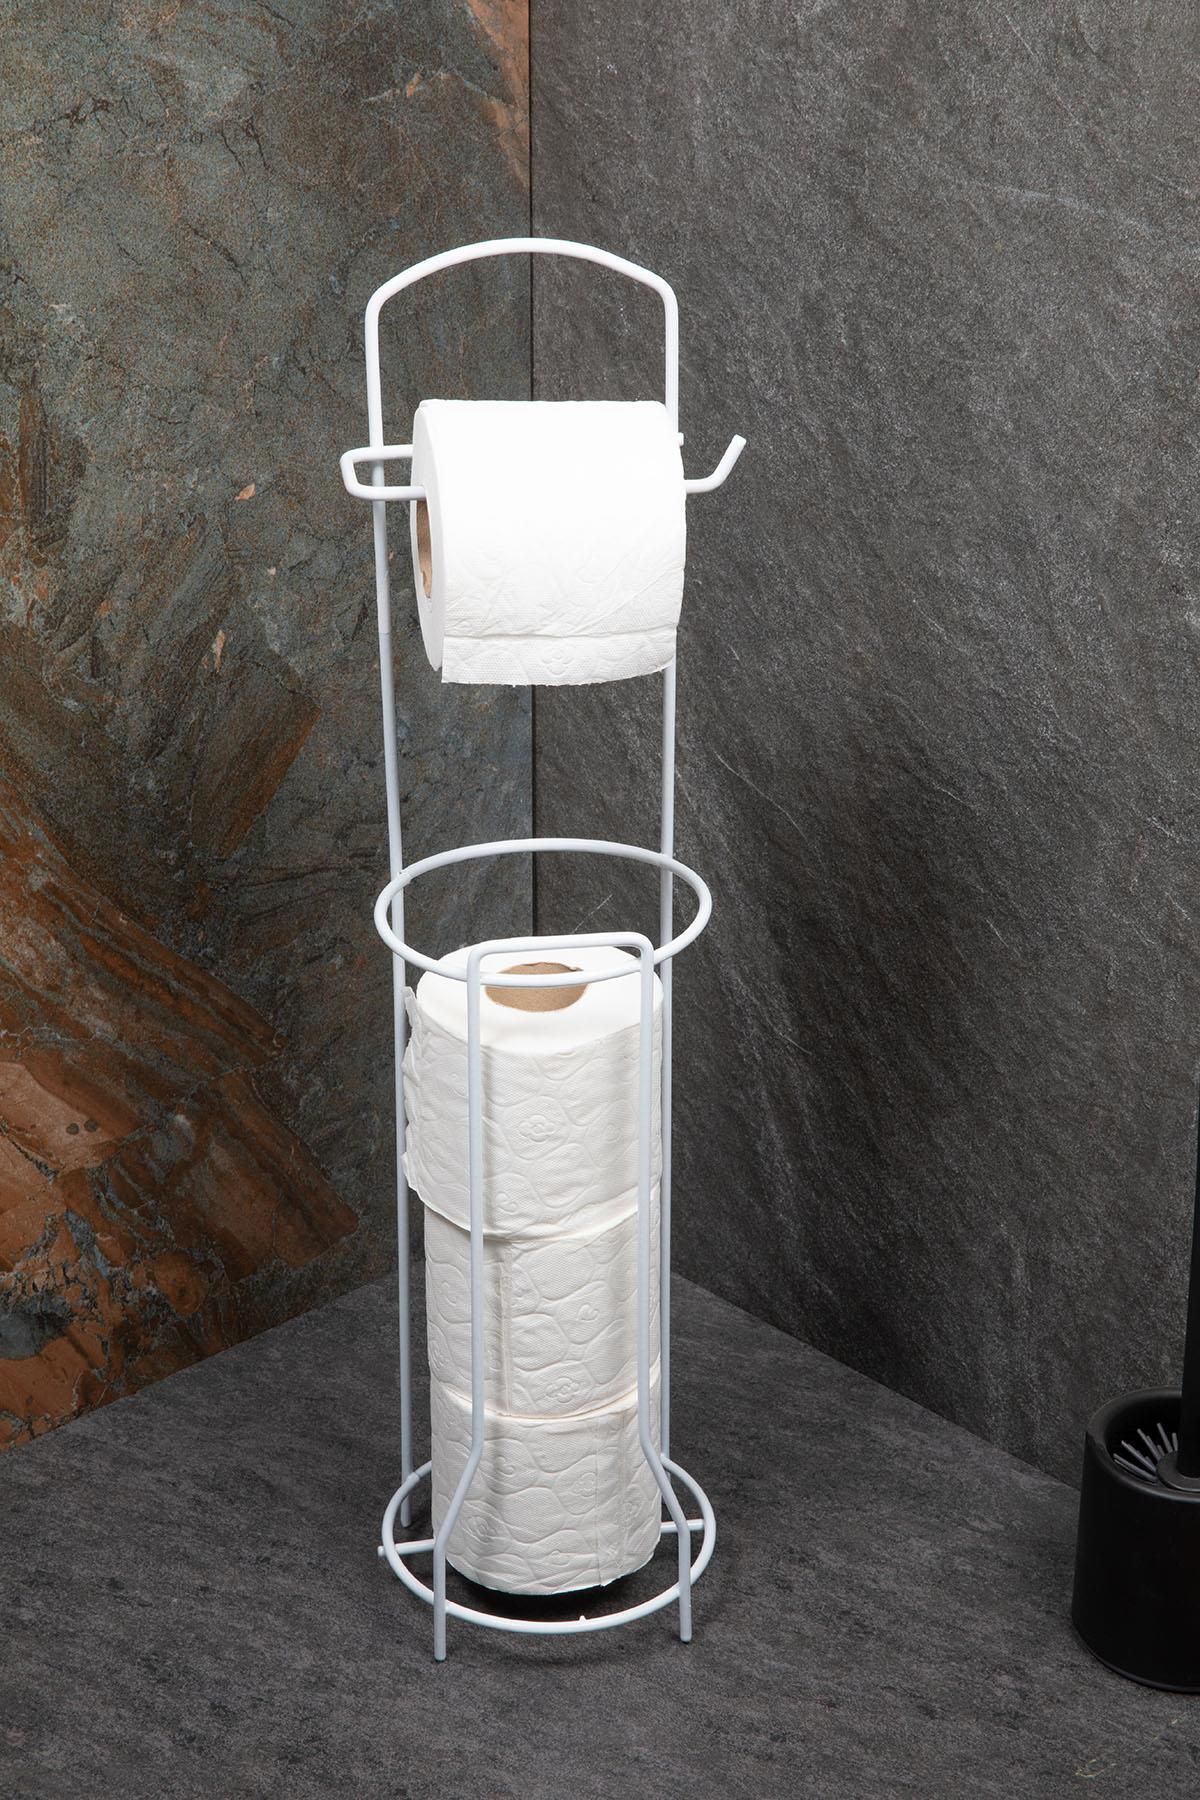 Doreline Tuvalet Kağıtlık Wc Kağıtlığı Tuvalet Kağıdı Standı Yedekli Tuvalet Kağıt Askısı